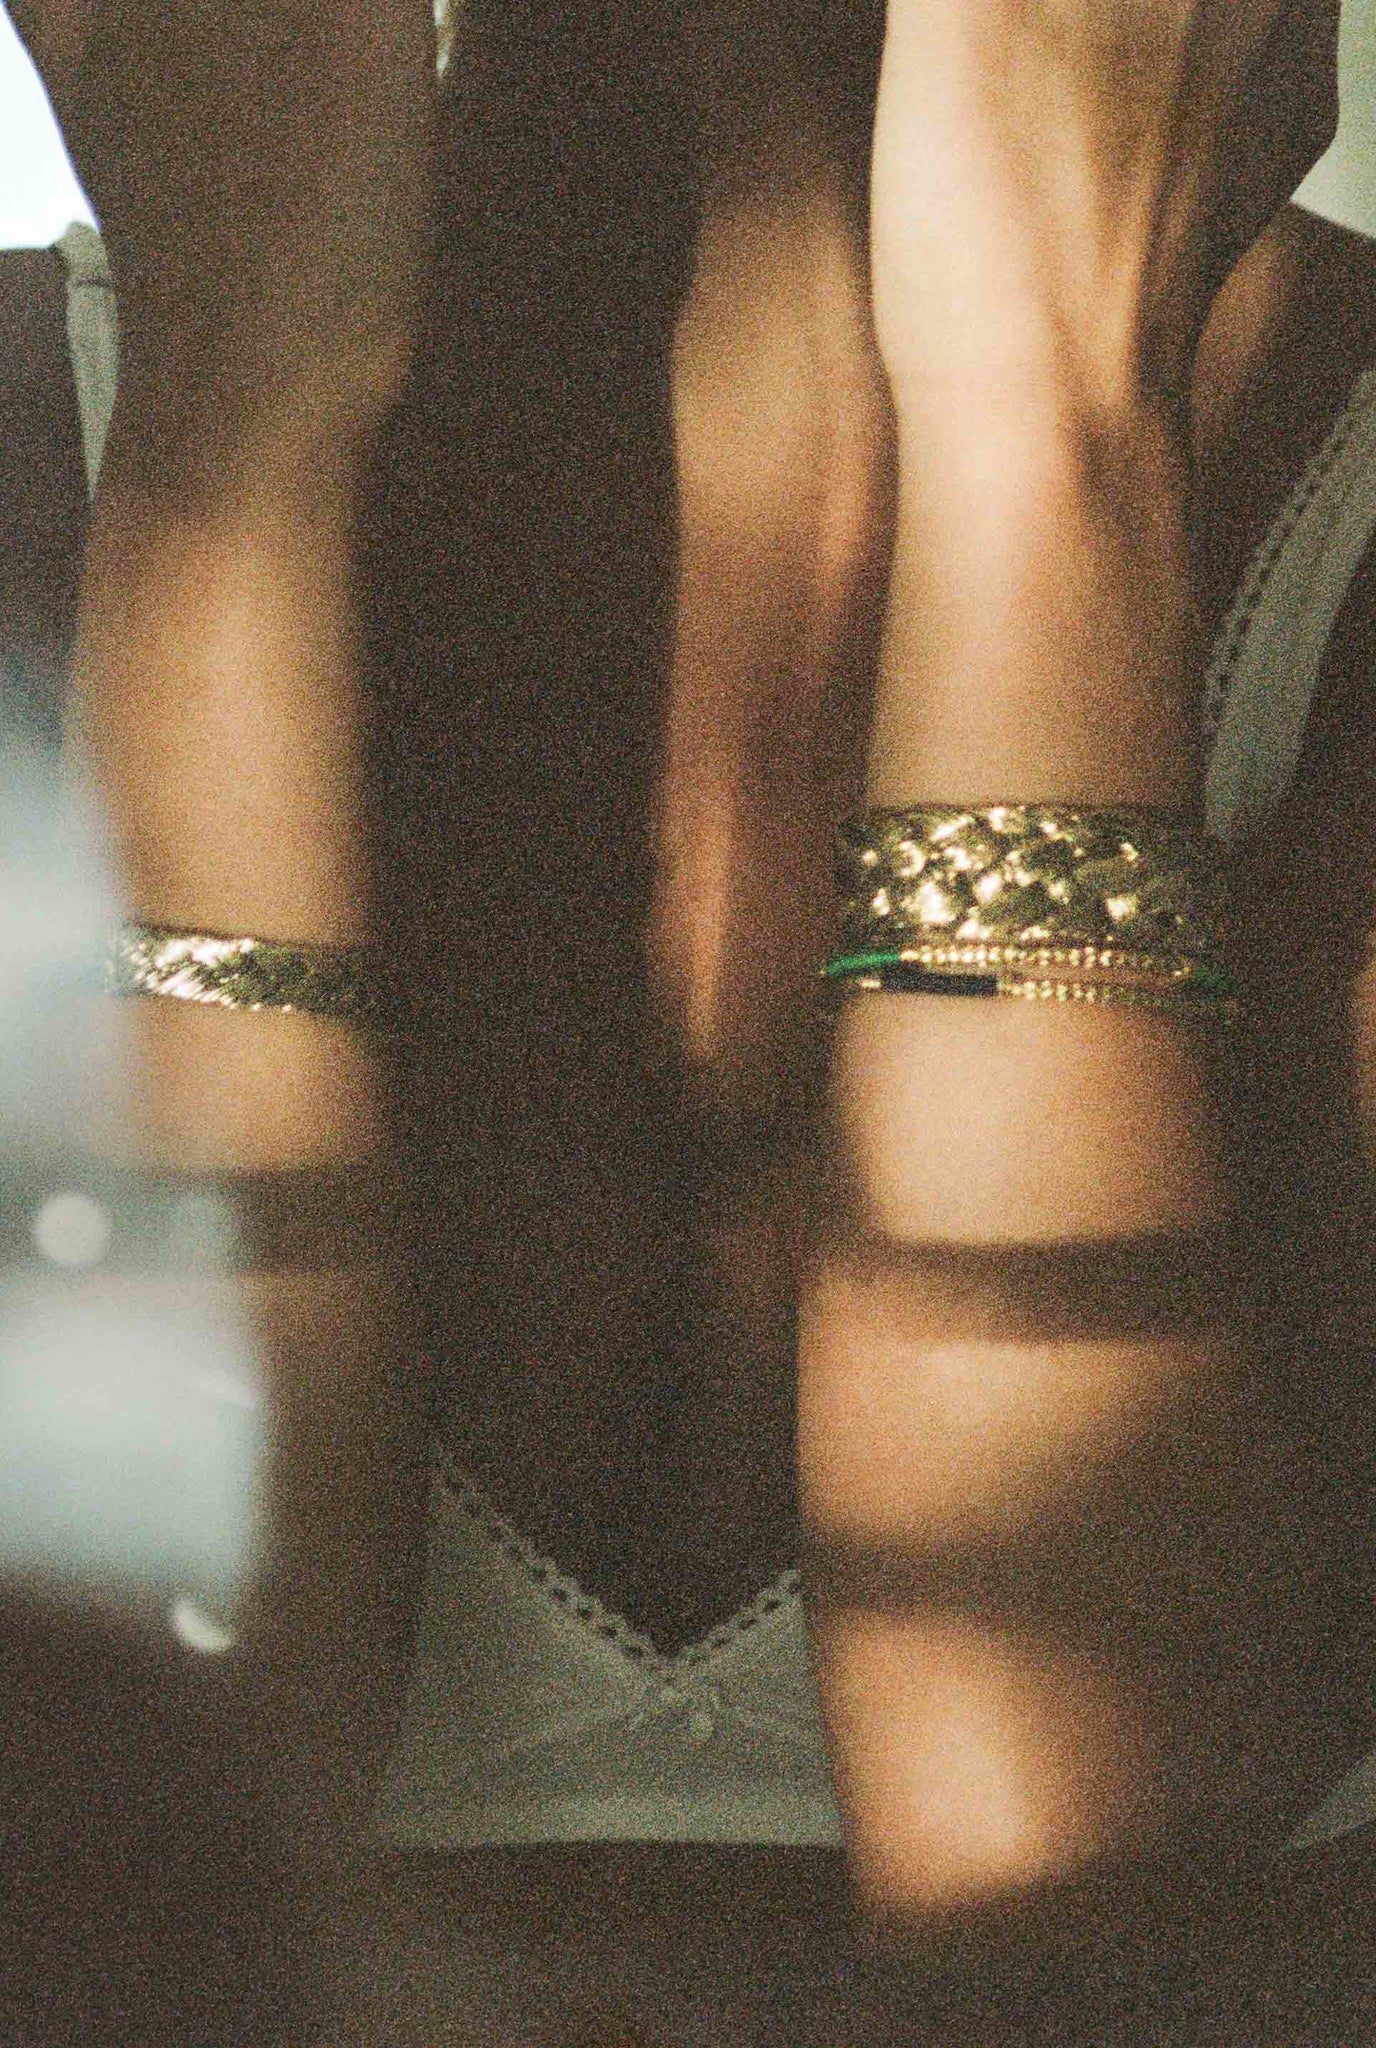 Soho bracelet, green